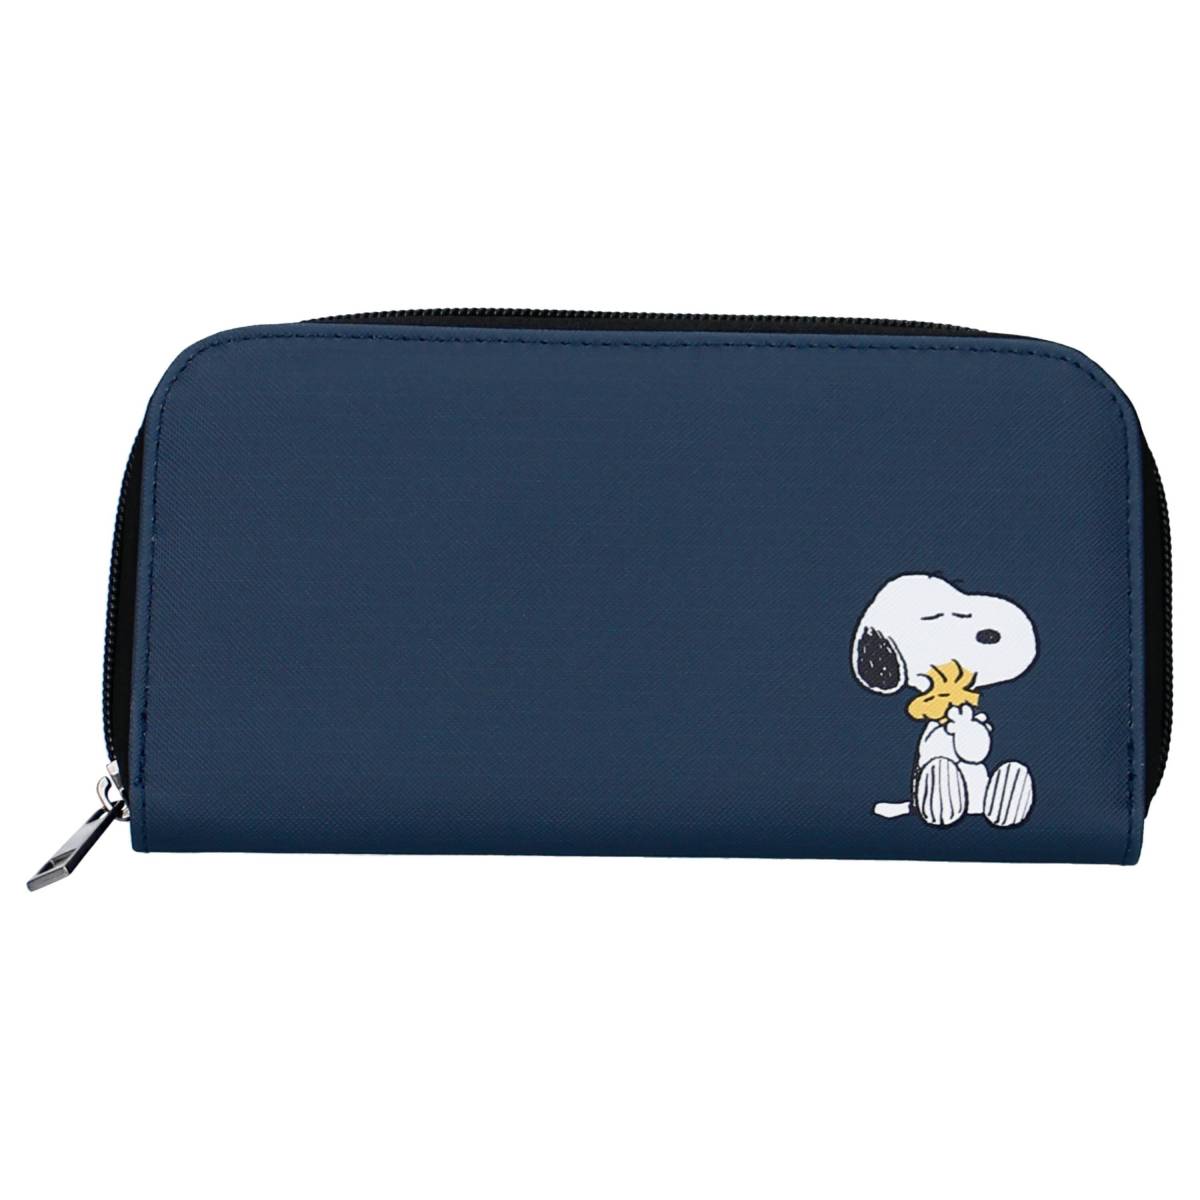 Monedero Snoopy Forever Companion azul 19cm